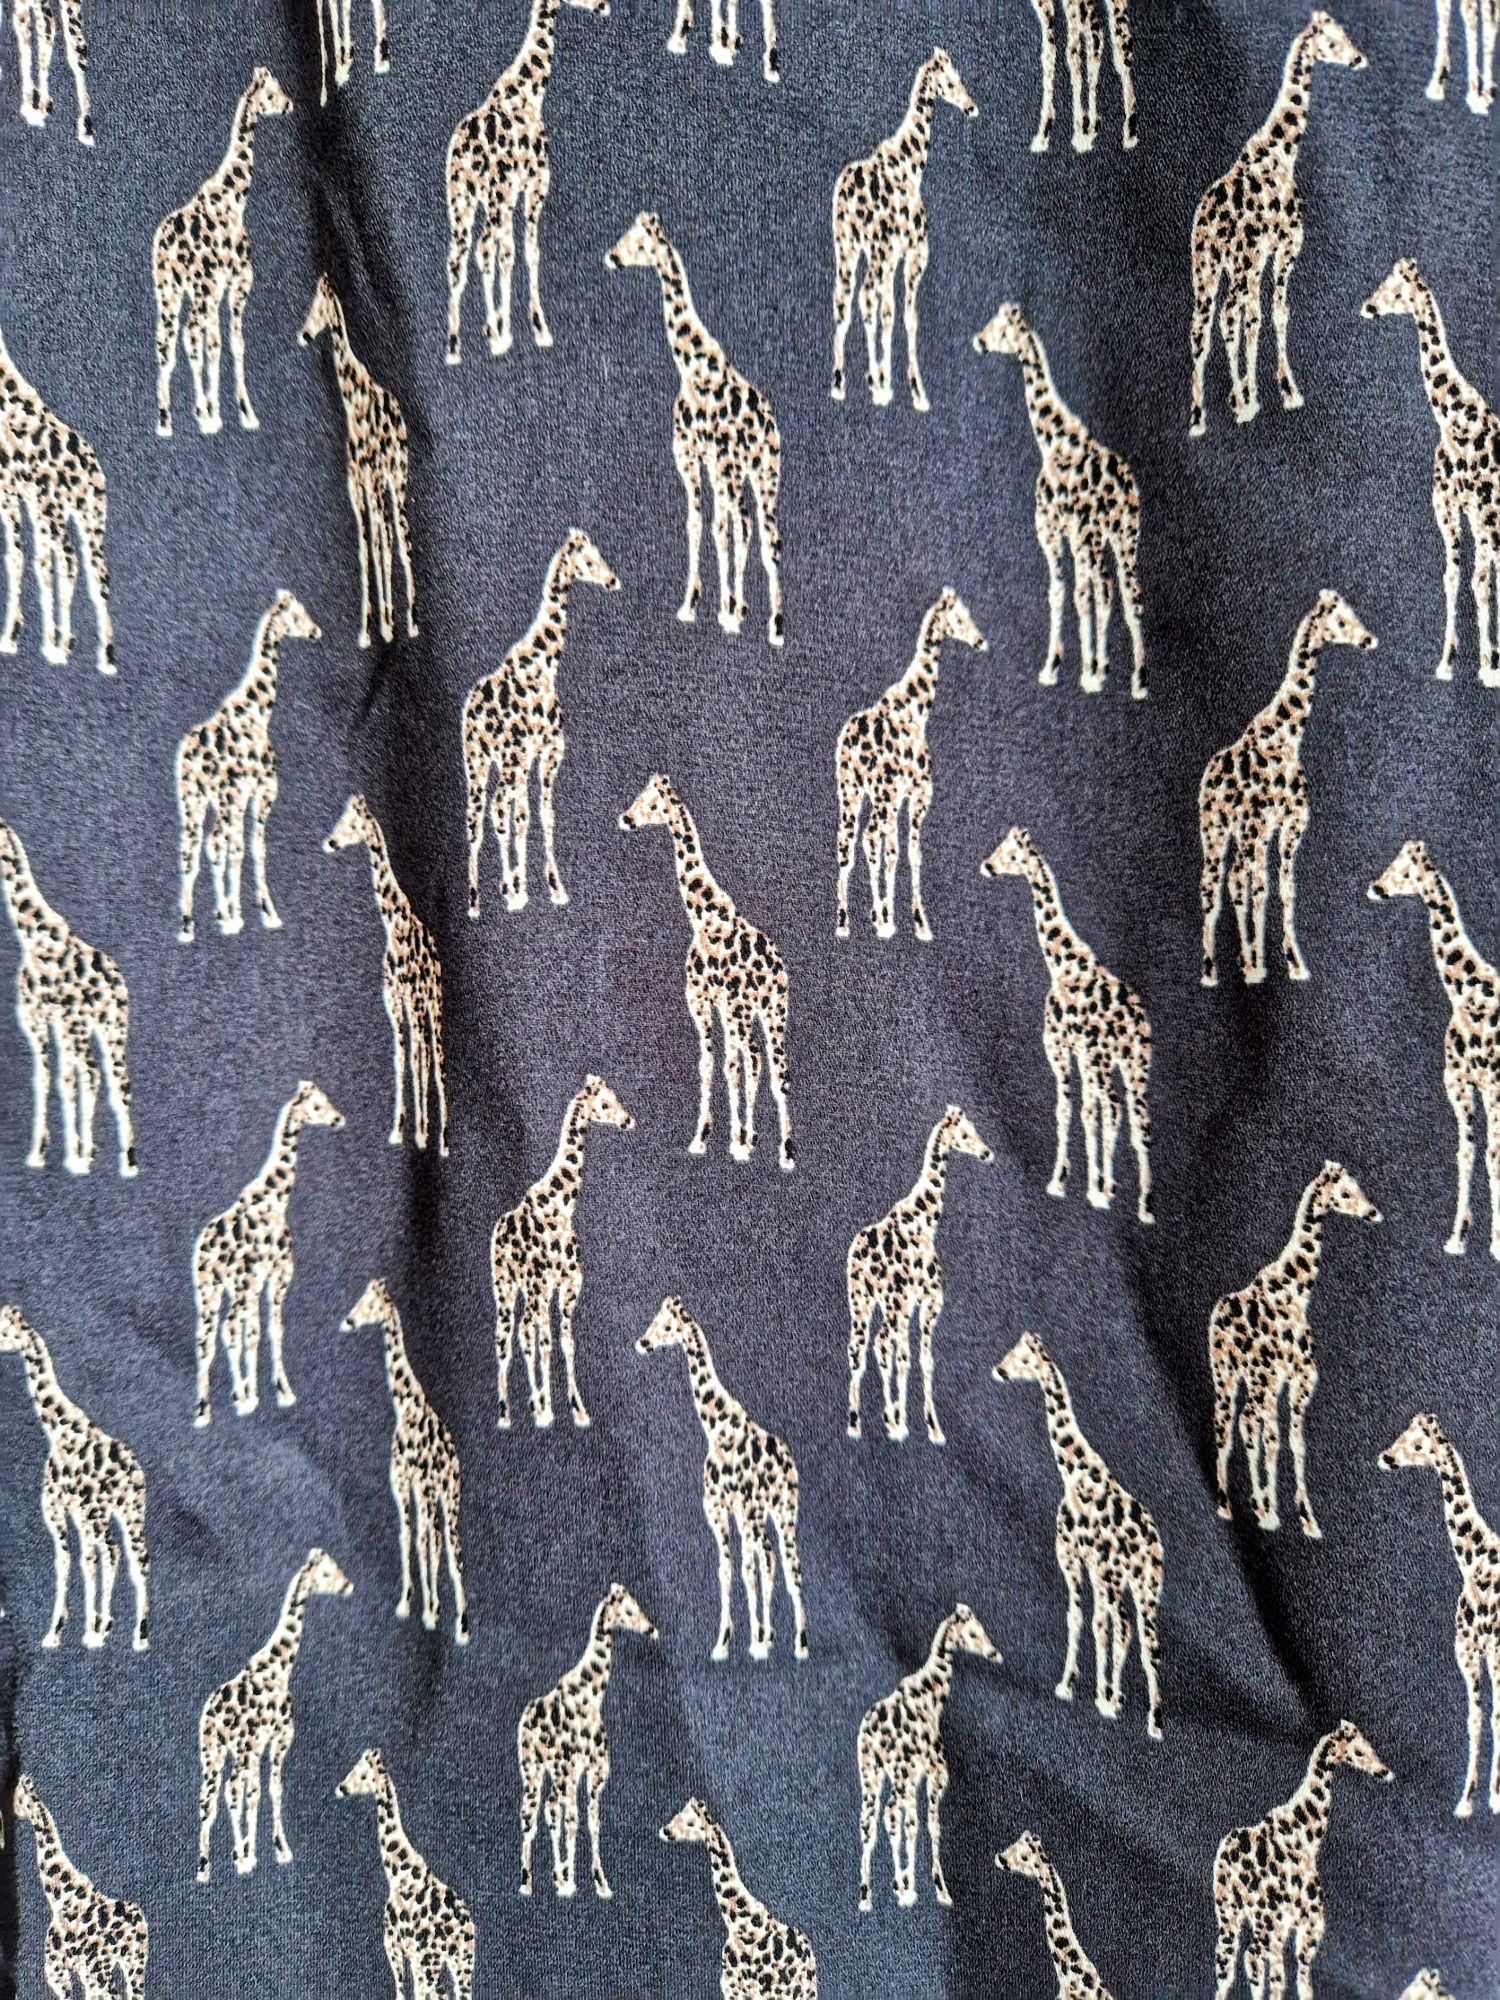 Zwiewna lekka bluzka H&M roz.40 L Safari w żyrafy